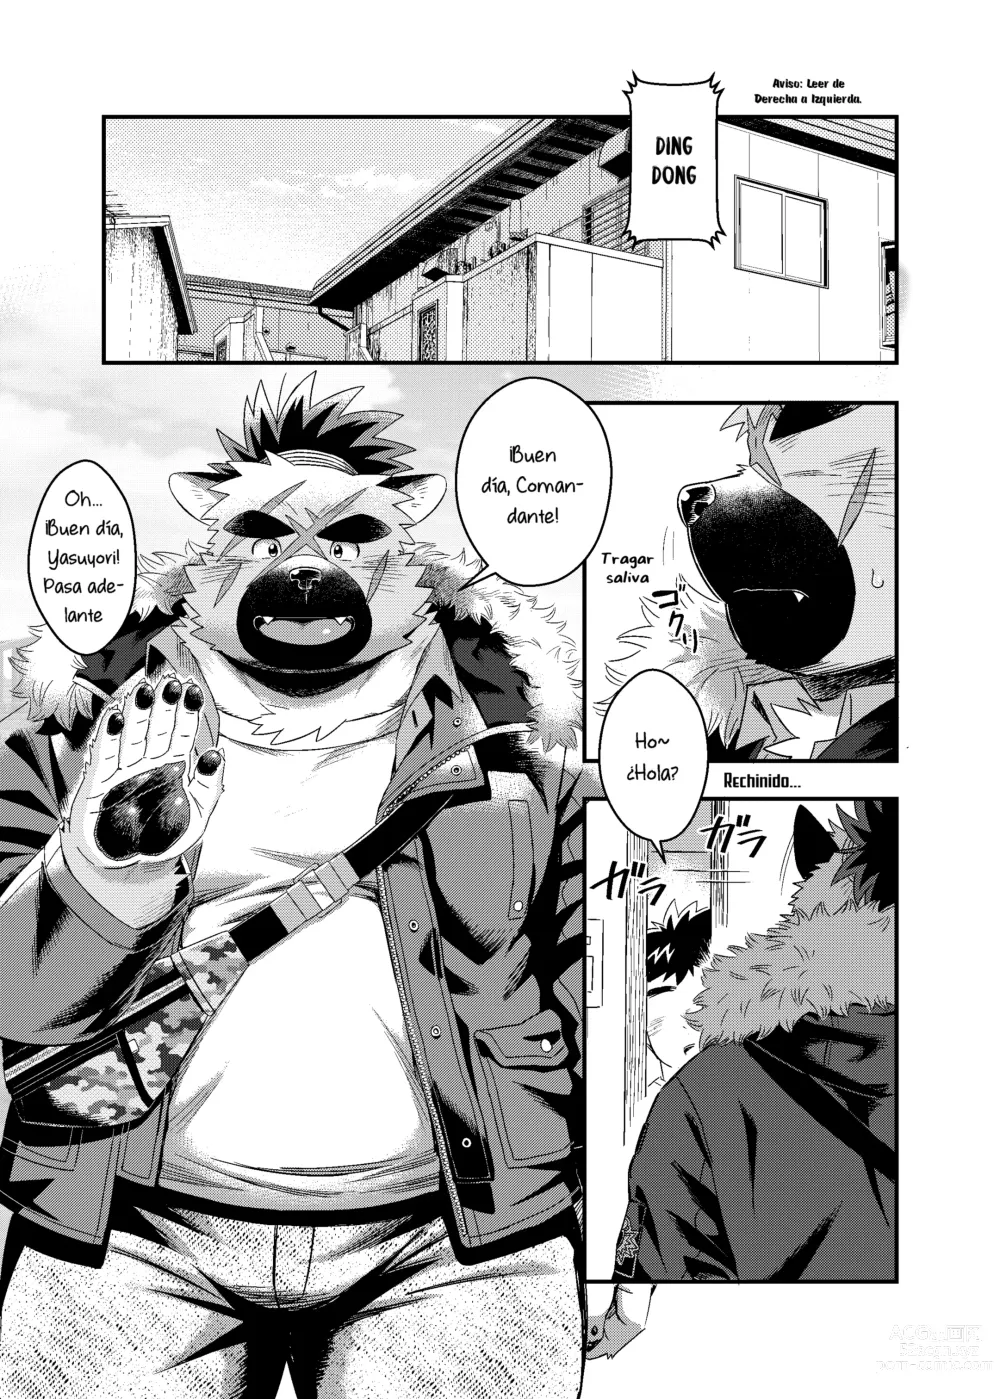 Page 4 of doujinshi Aquella vez que tomé la medicina incorrecta cuando estaba de visita en la casa del Comandante.